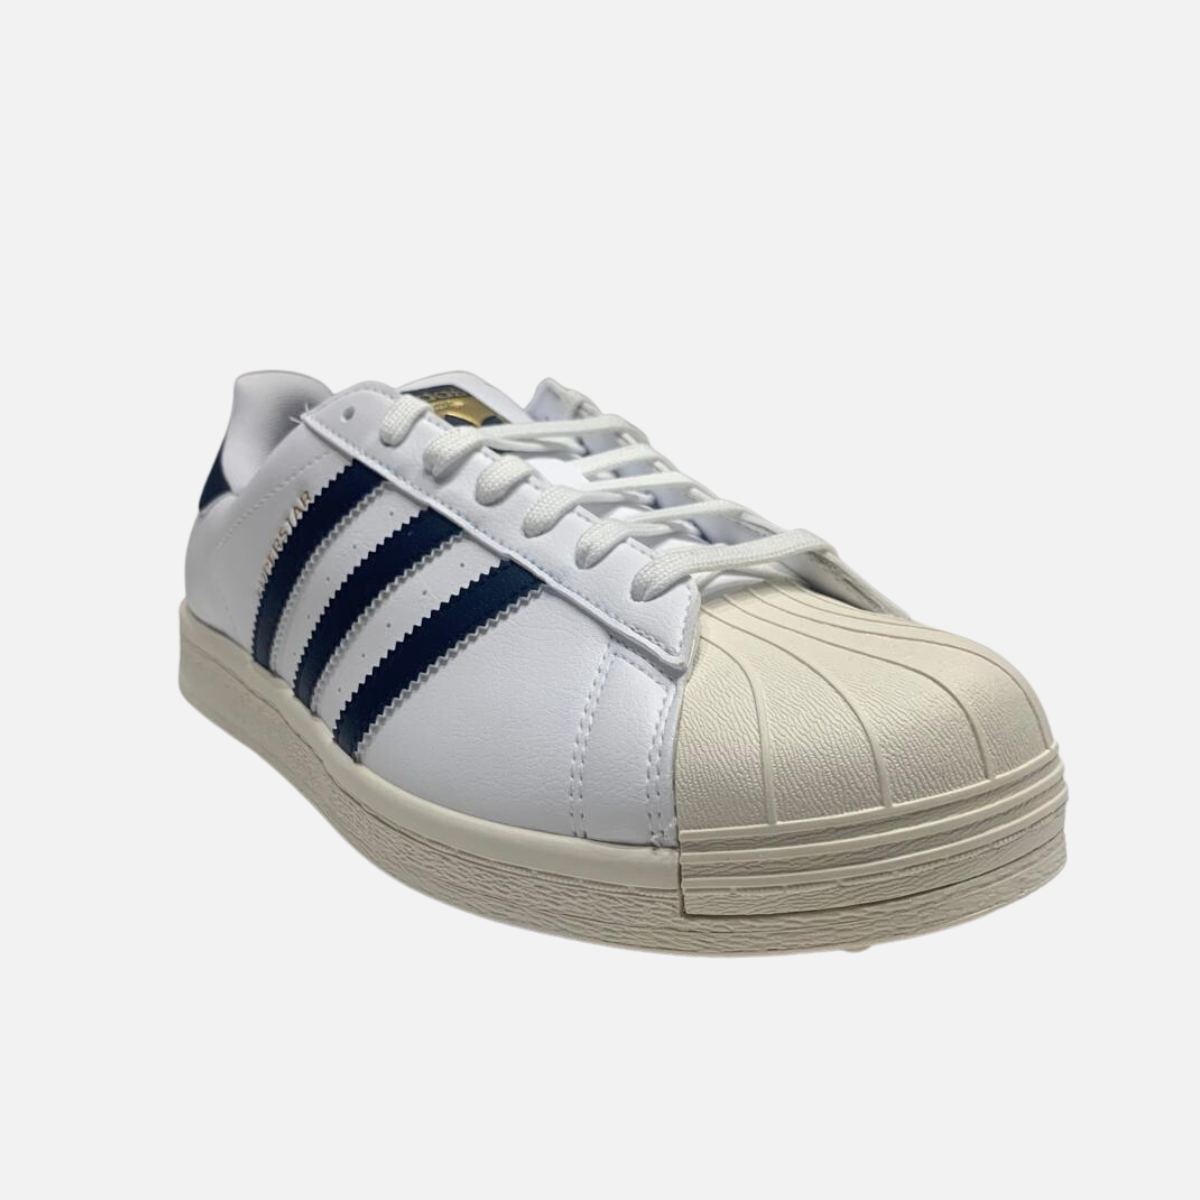 Adidas Superstar Unisex Golf Shoes -White/Collegiate Navy